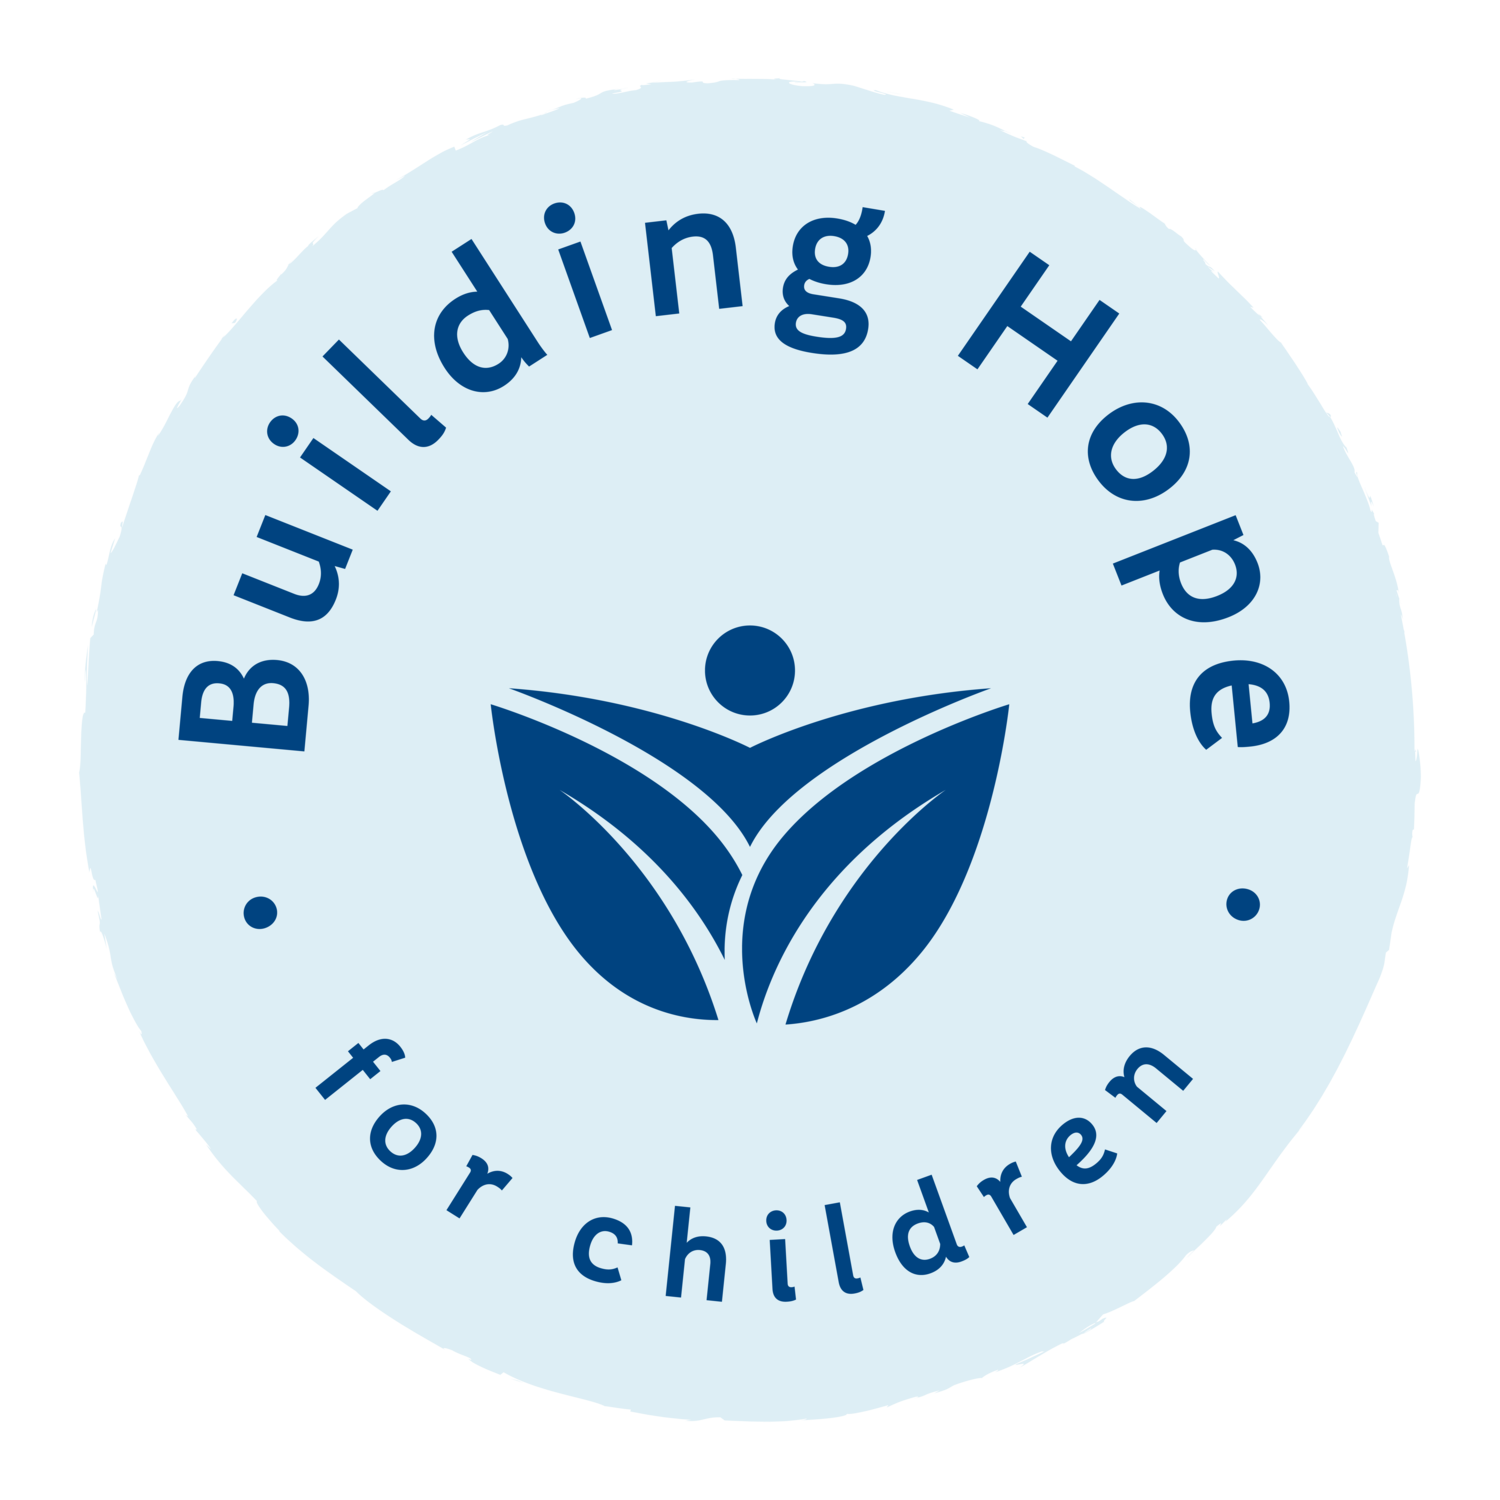 Building Hope for Children